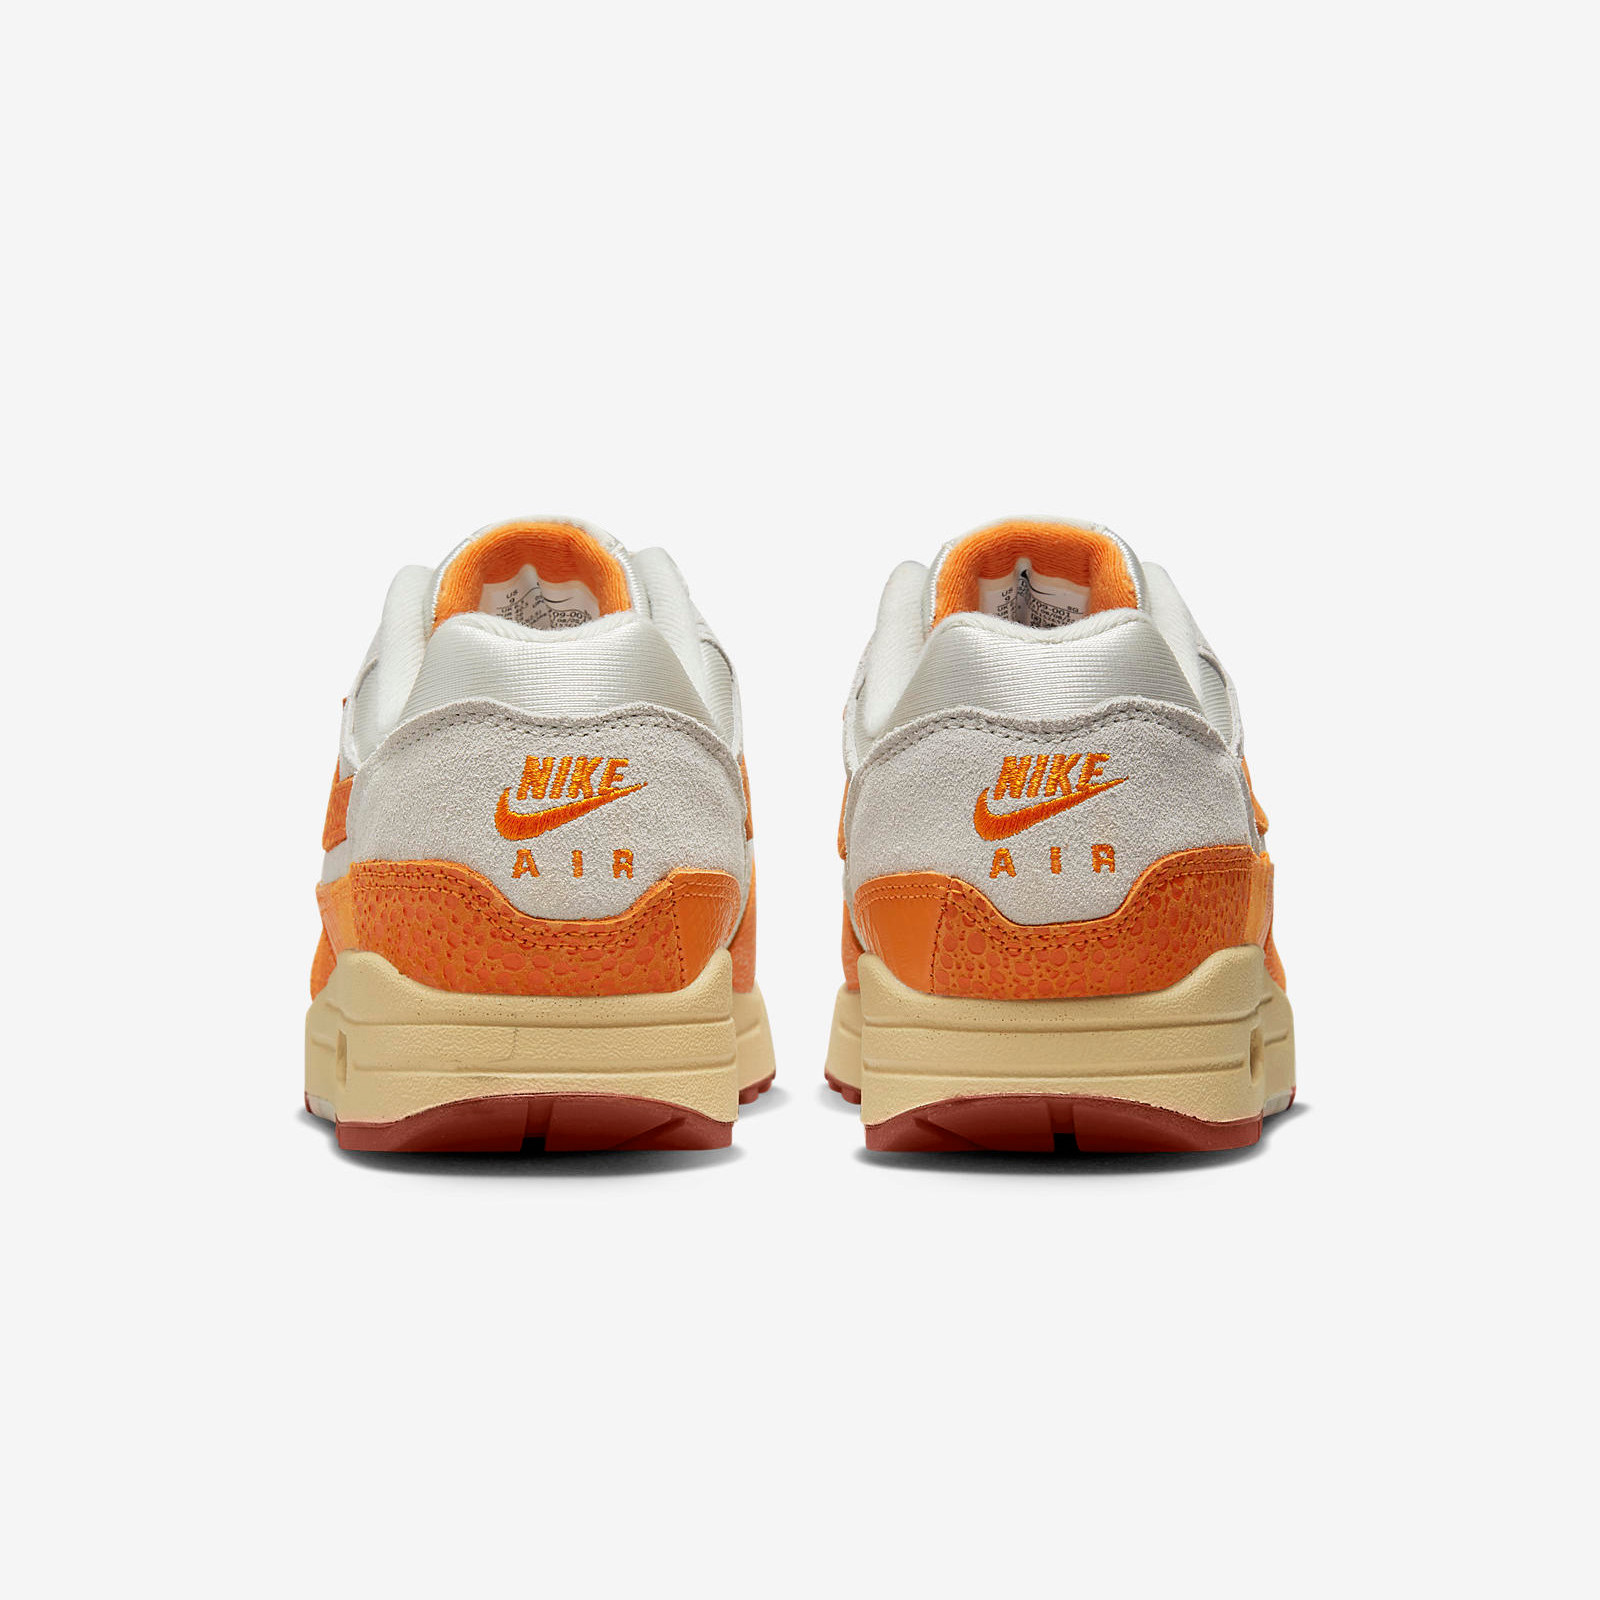 Nike Air Max 1
« Magma Orange »